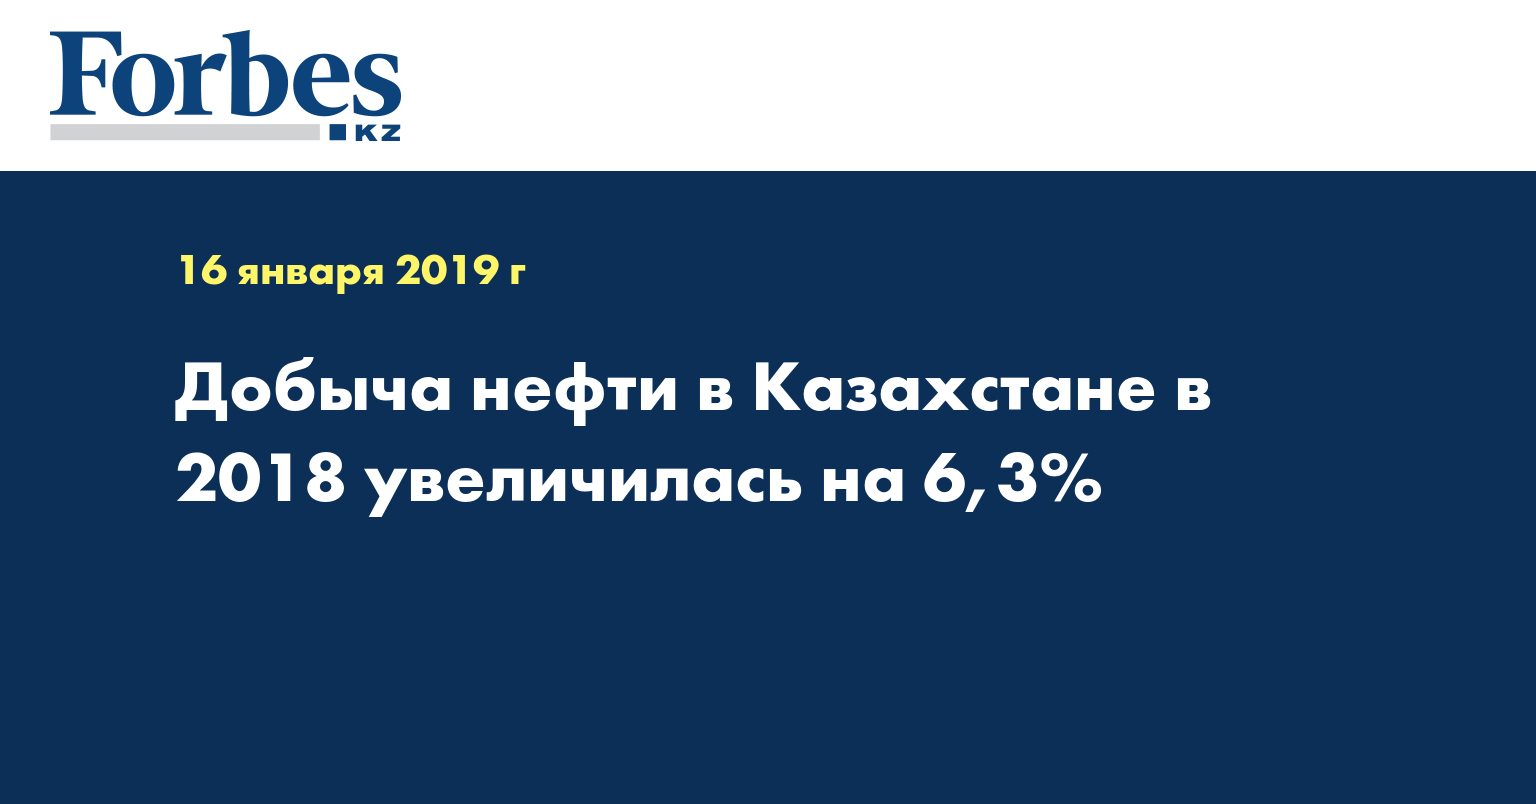 Добыча нефти в Казахстане в 2018 увеличилась на 6,3%